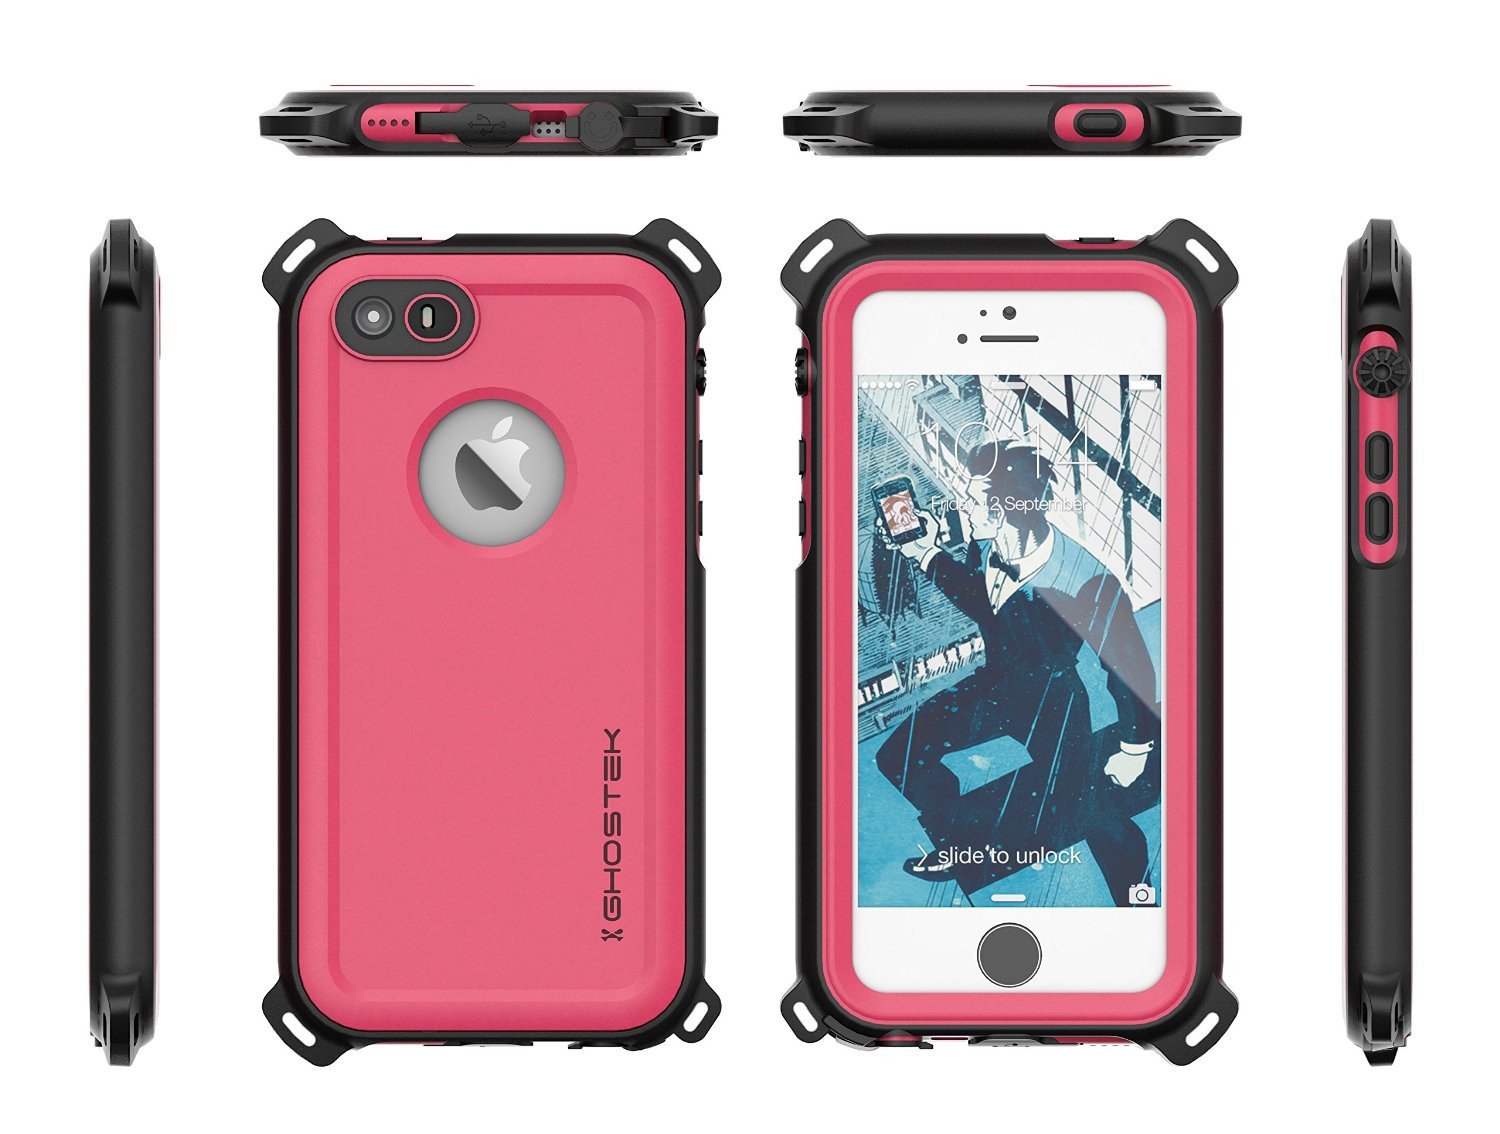 iPhone SE/5S/5 Waterproof Case, Ghostek® Nautical Pink Series| Underwater | Aluminum Frame